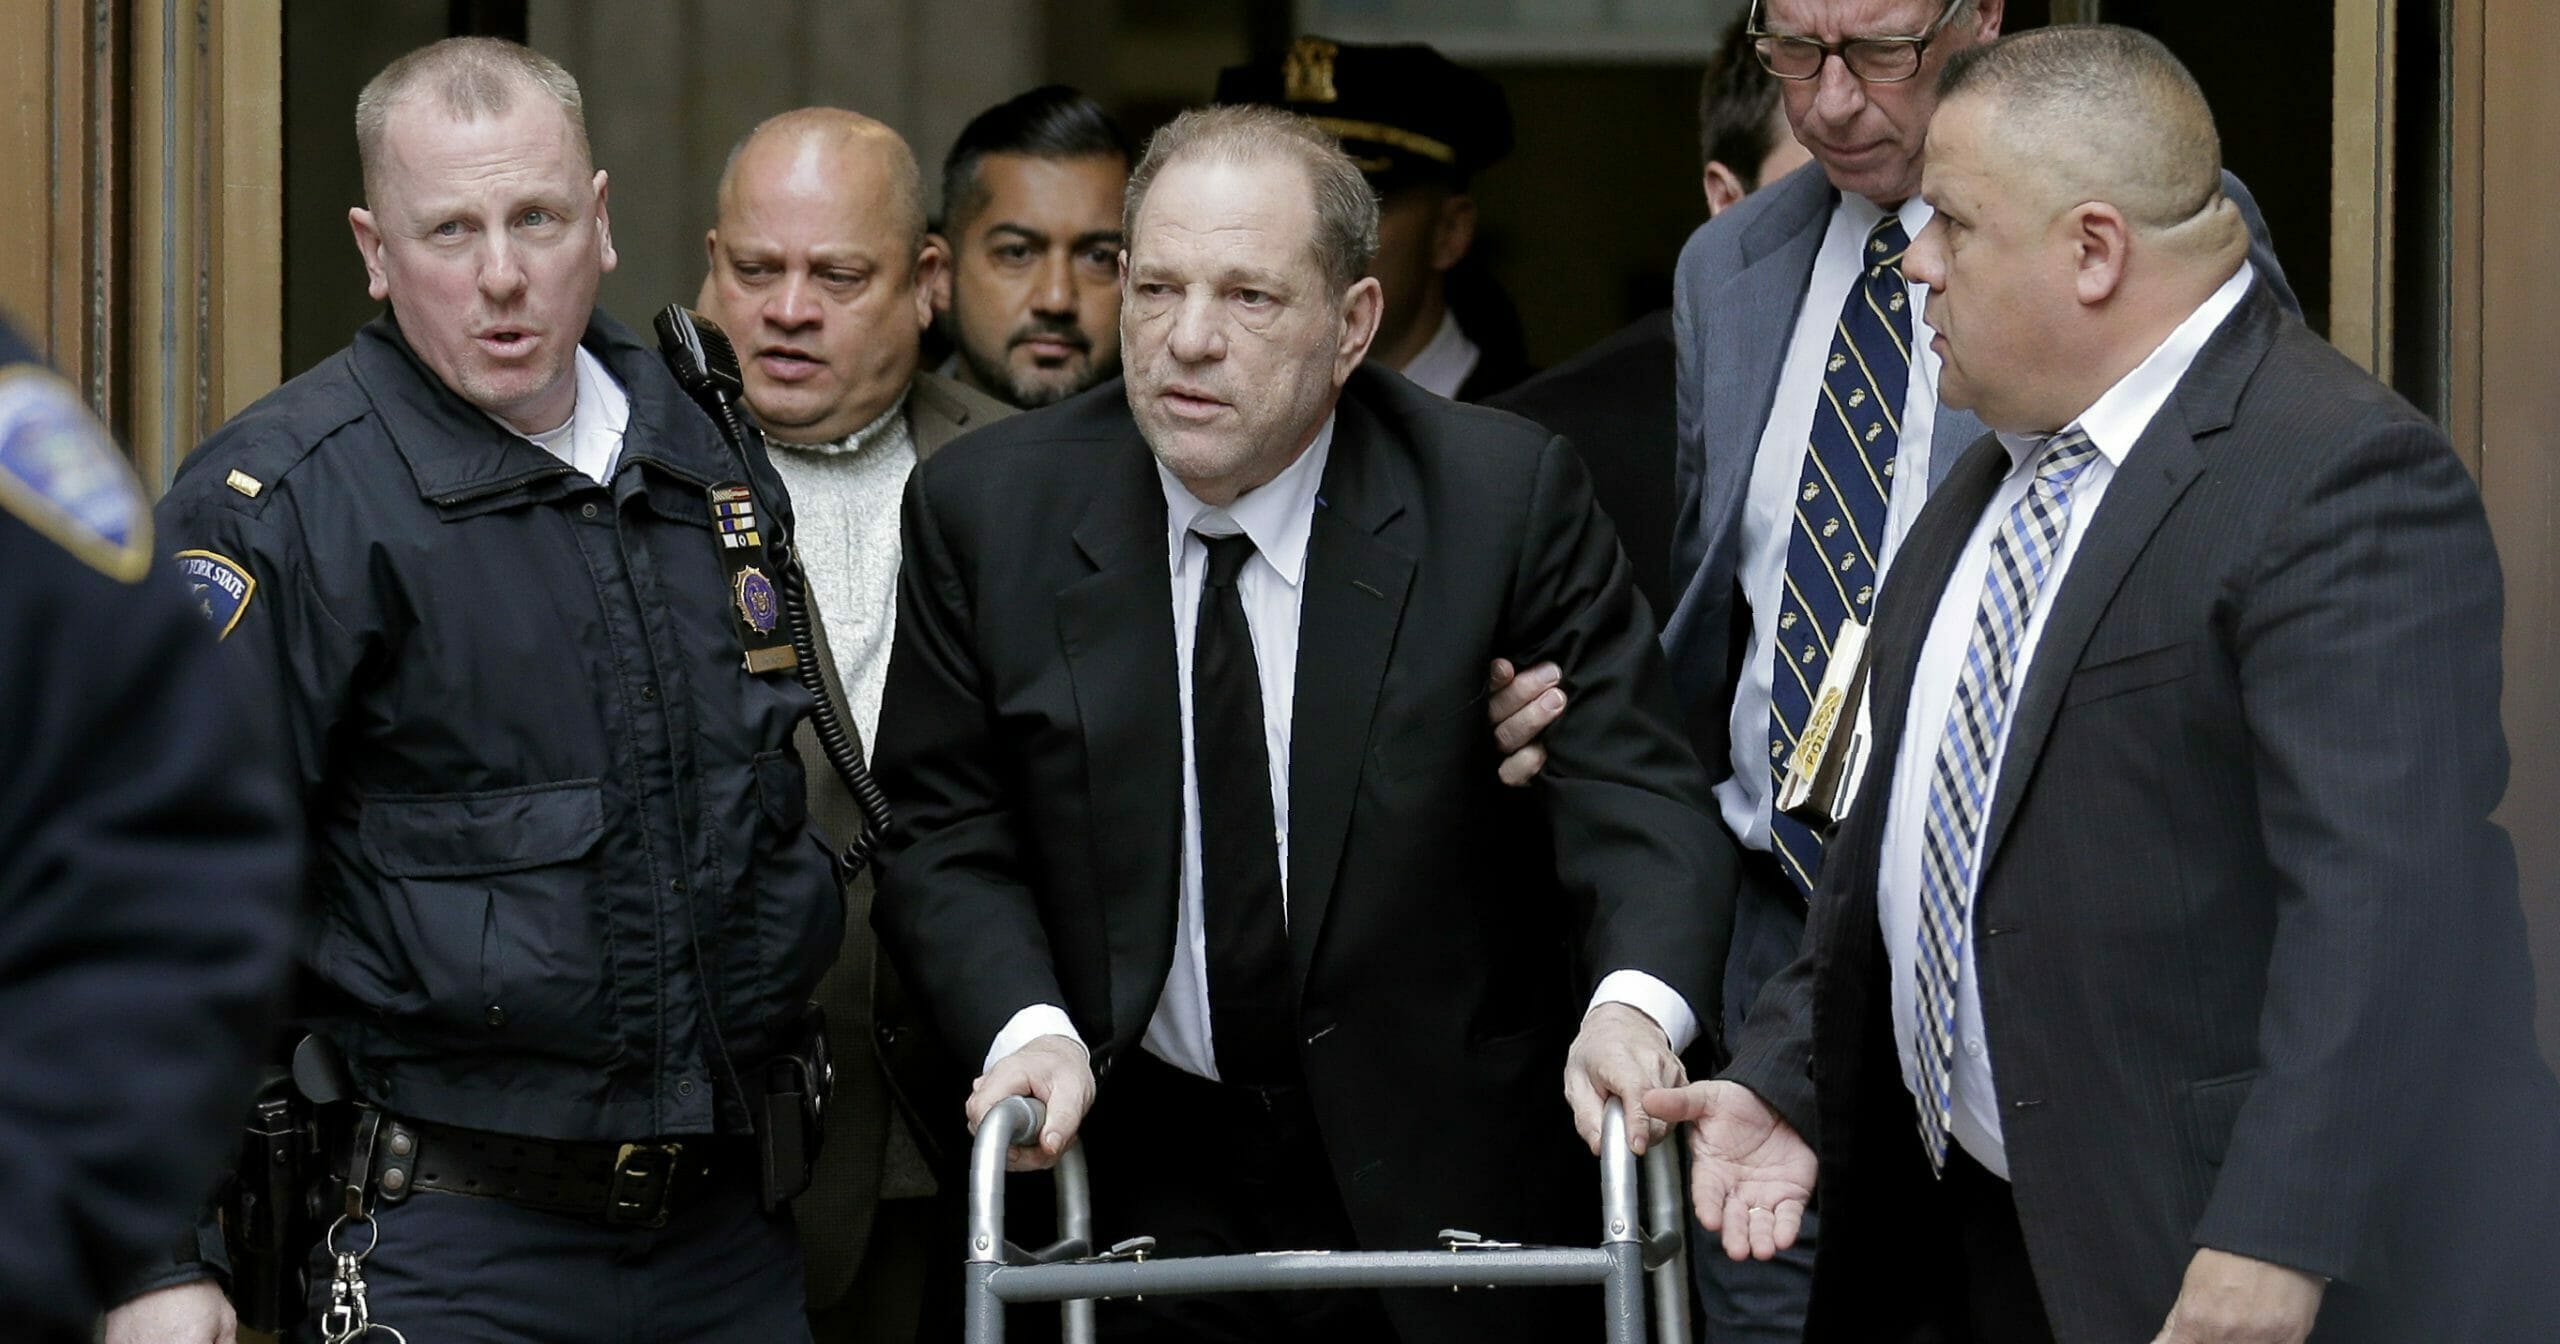 Disgraced movie producer Harvey Weinstein leaves Manhattan Supreme Court in New York on Jan. 6, 2020.